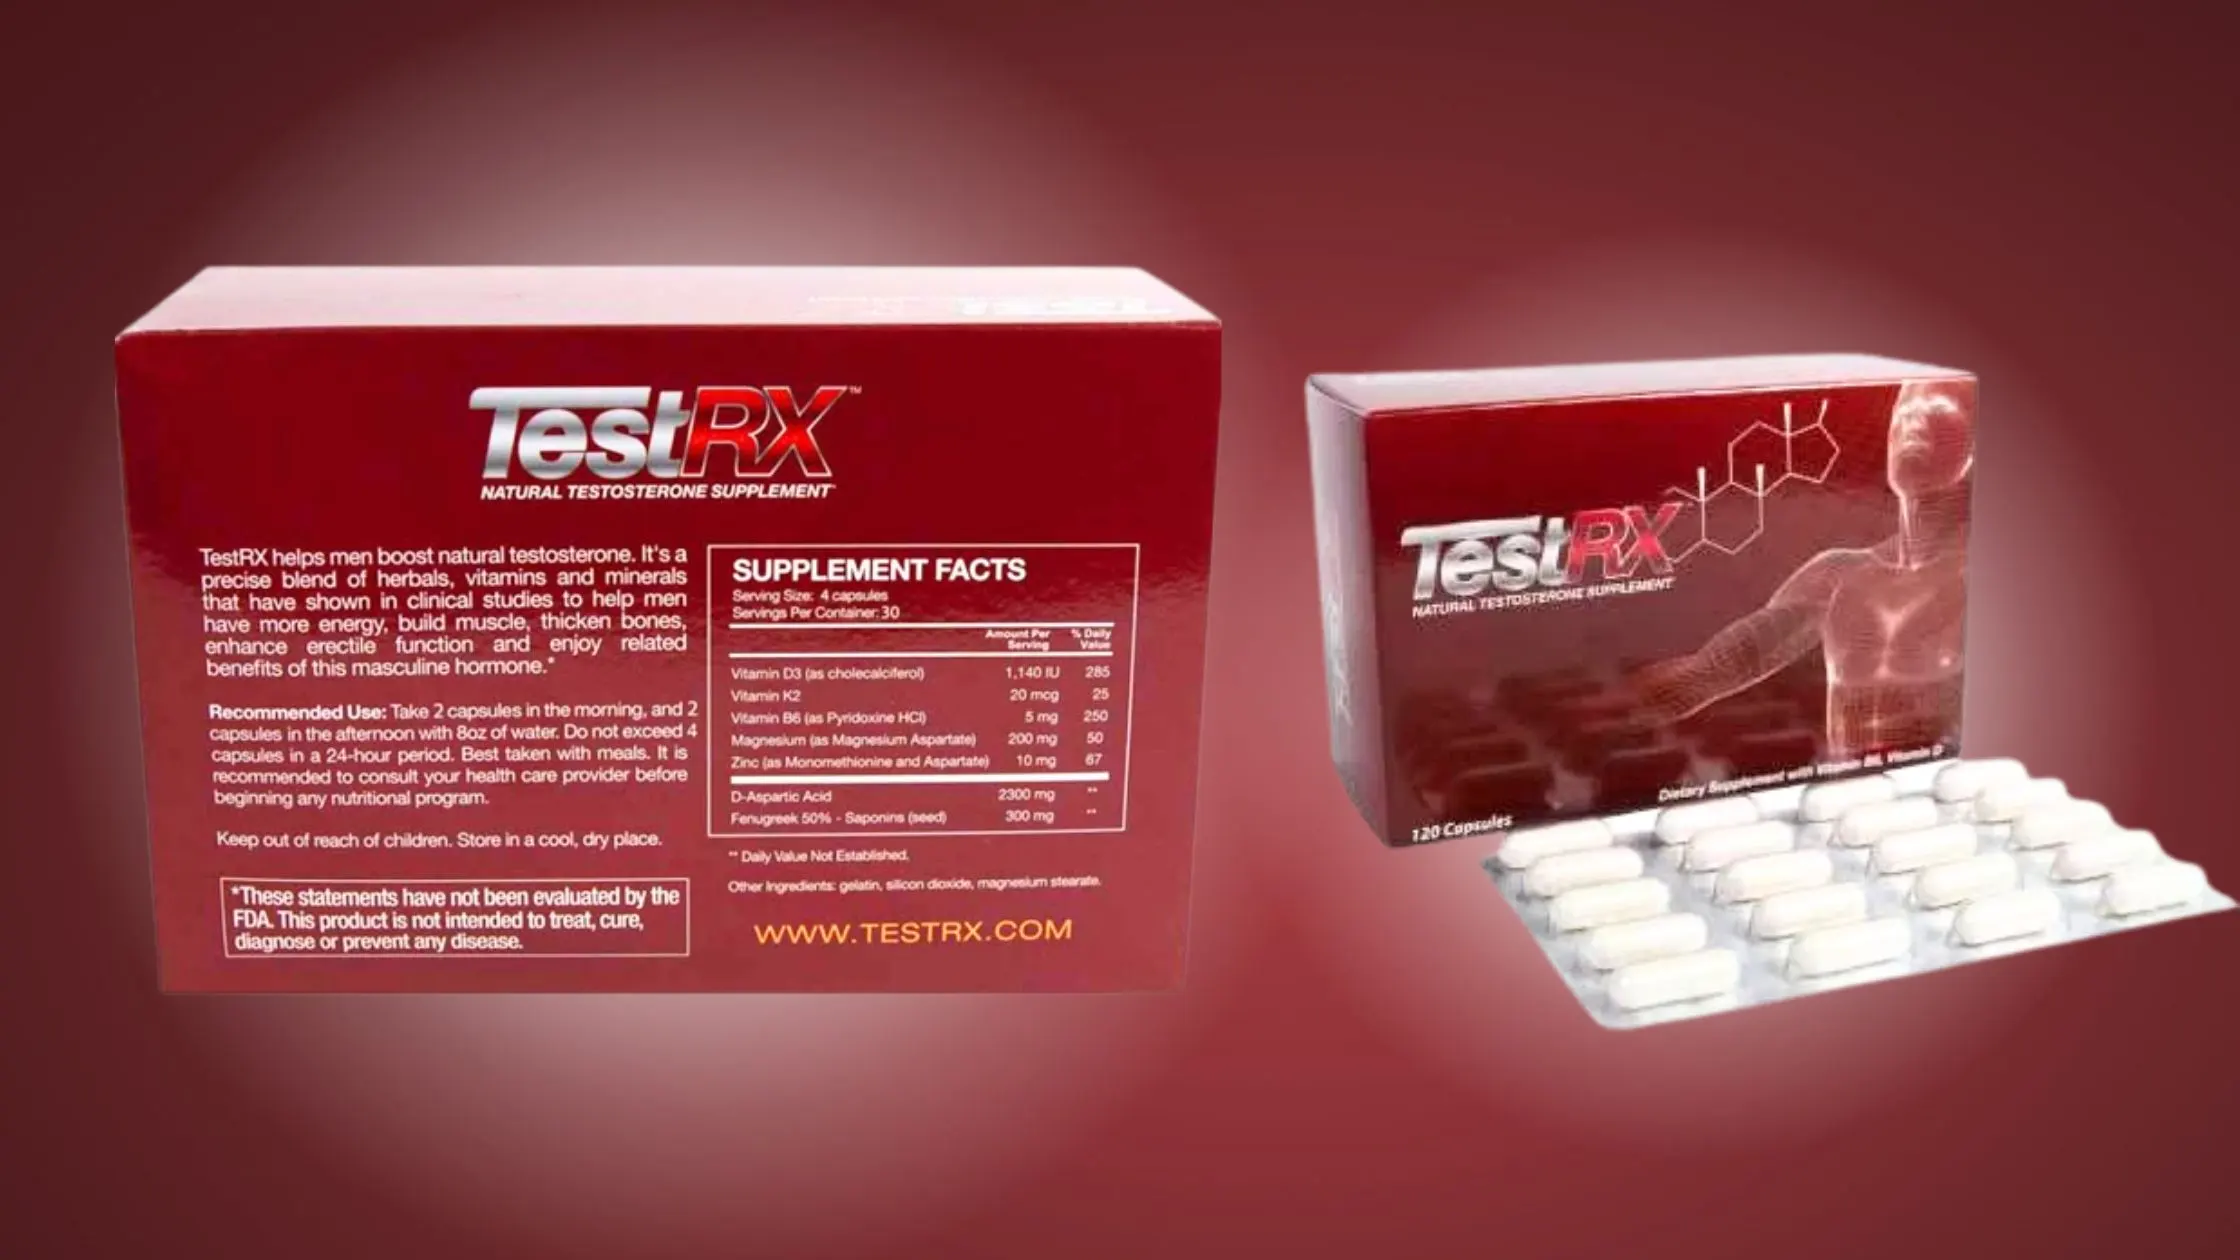 TestRX Supplement Facts